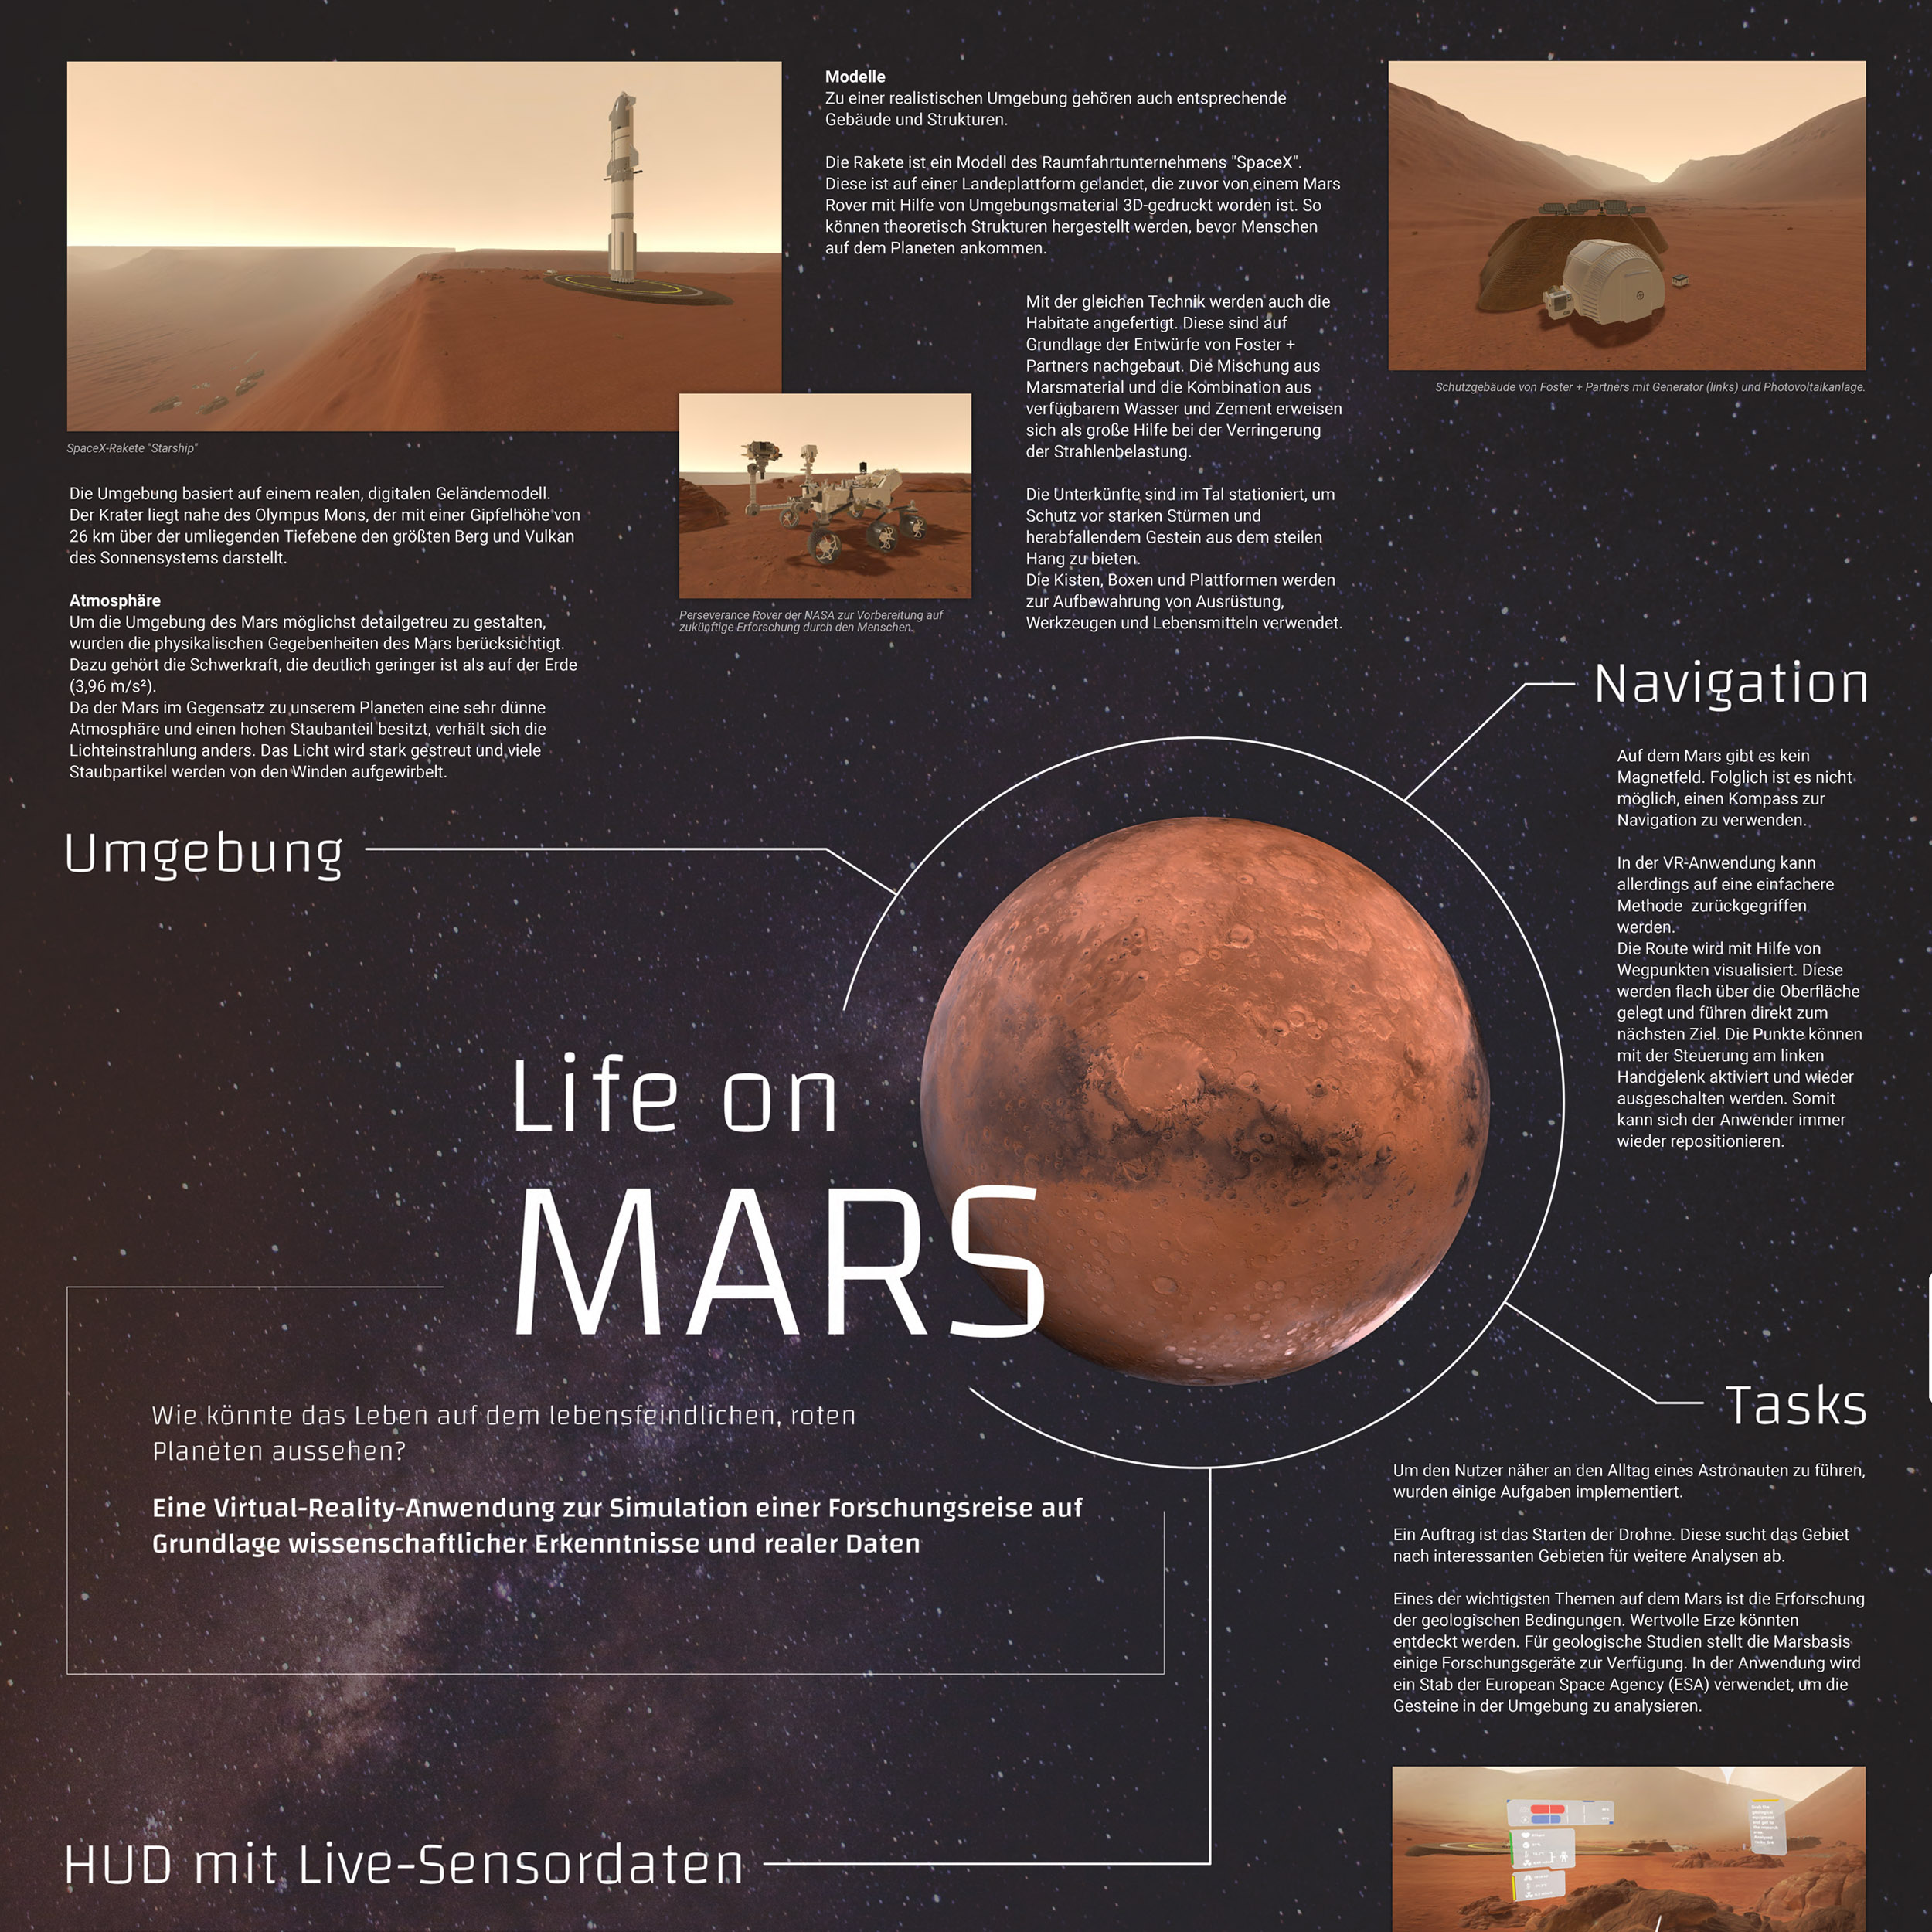 Life on Mars!